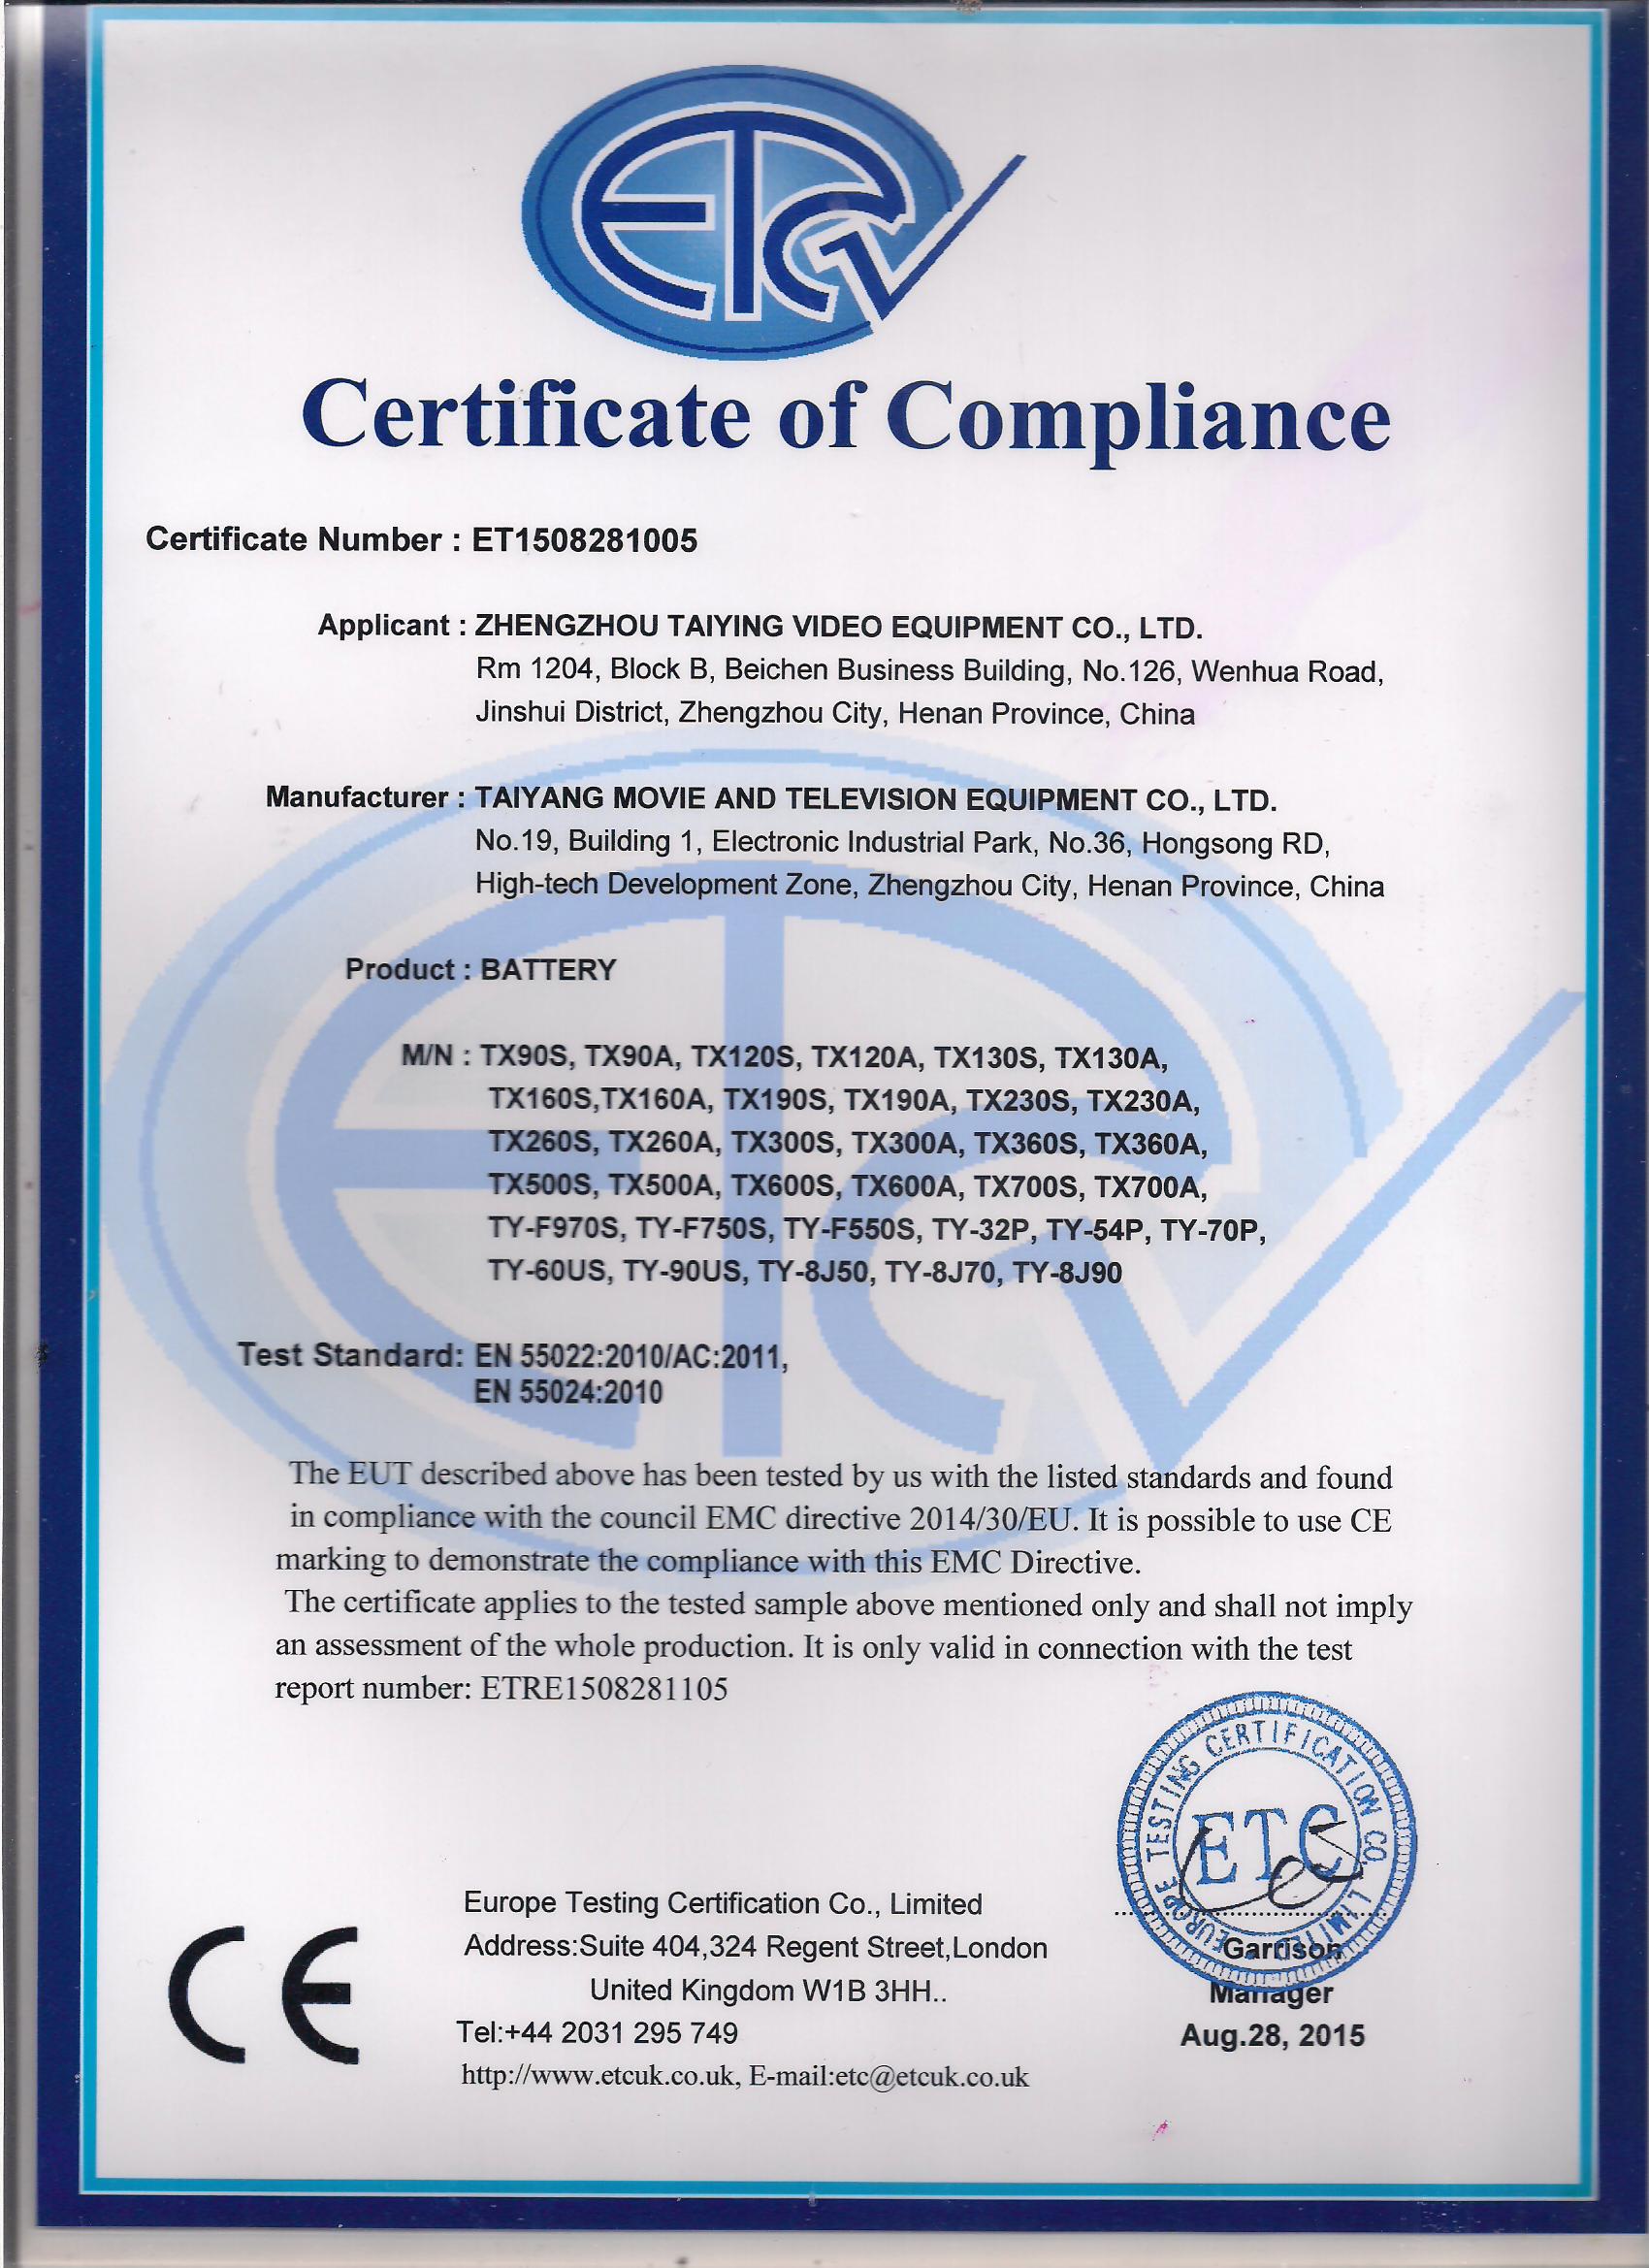 锂离子电池--CE认证